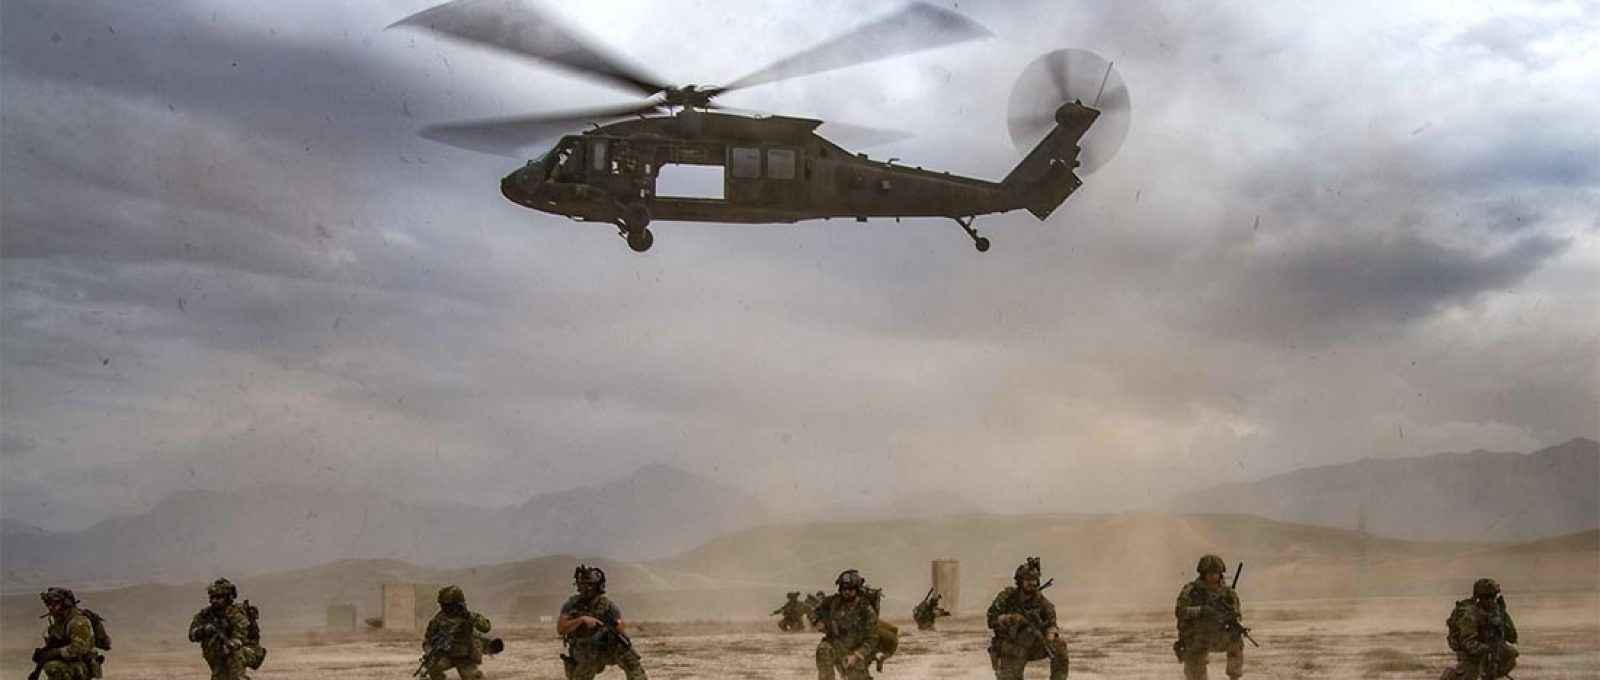 Tropas americanas protegem perímetro em um local não revelado no Afeganistão, em 17 de março de 2020 (Foto: Sargento Joel Pfiester/USAF).